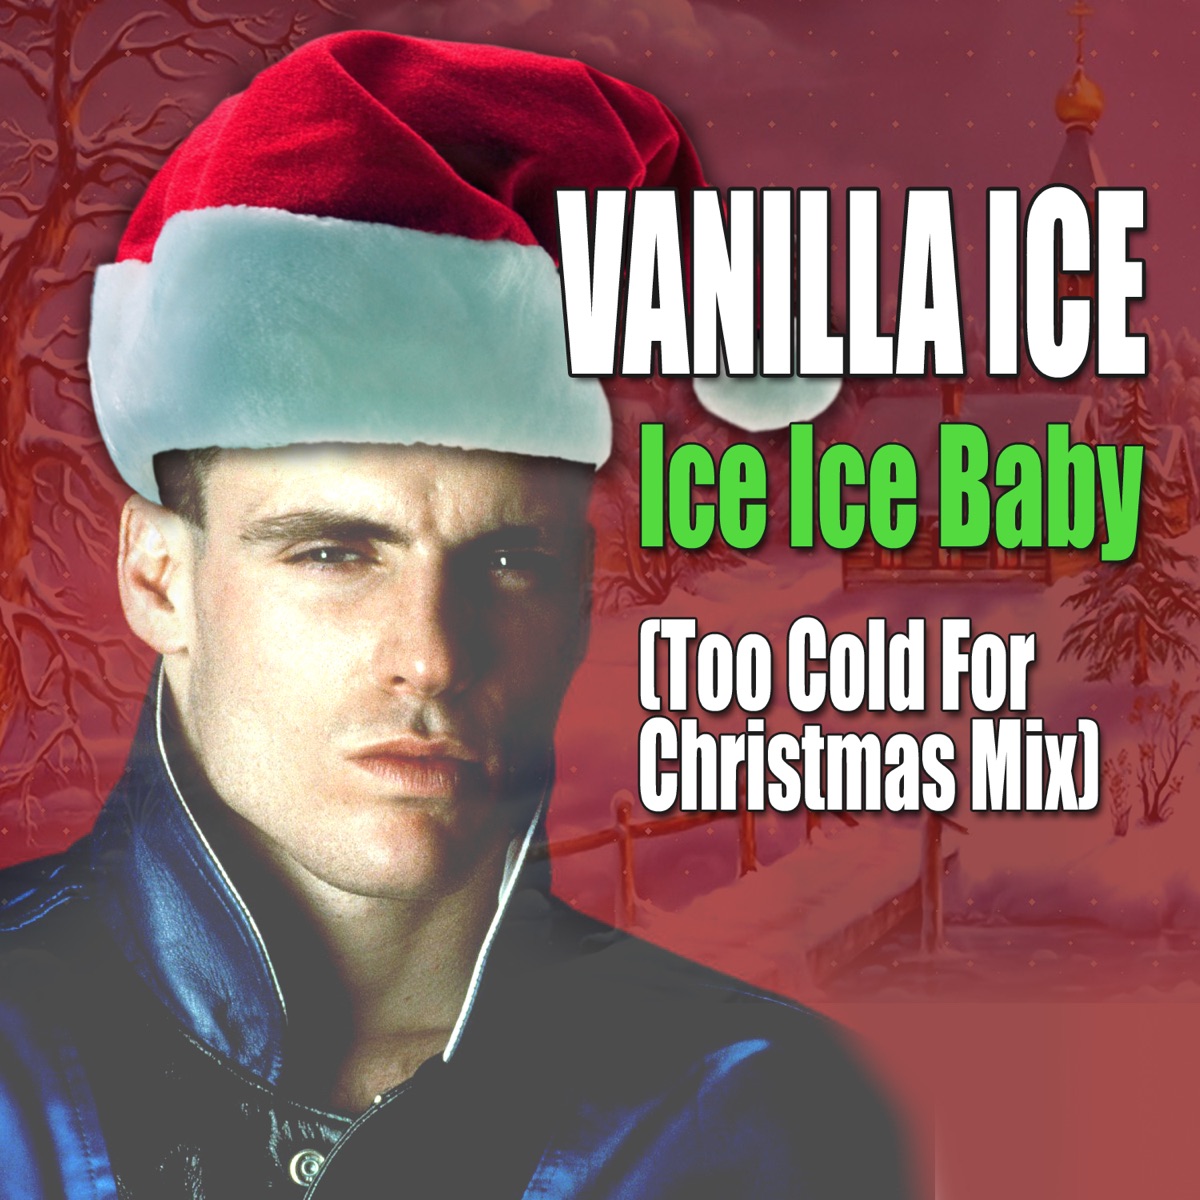 Айс ice. Ice Ice Baby. Vanilla Ice. Ванилла айс айс айс Беби. Ice Baby Vanilla Ice певец.